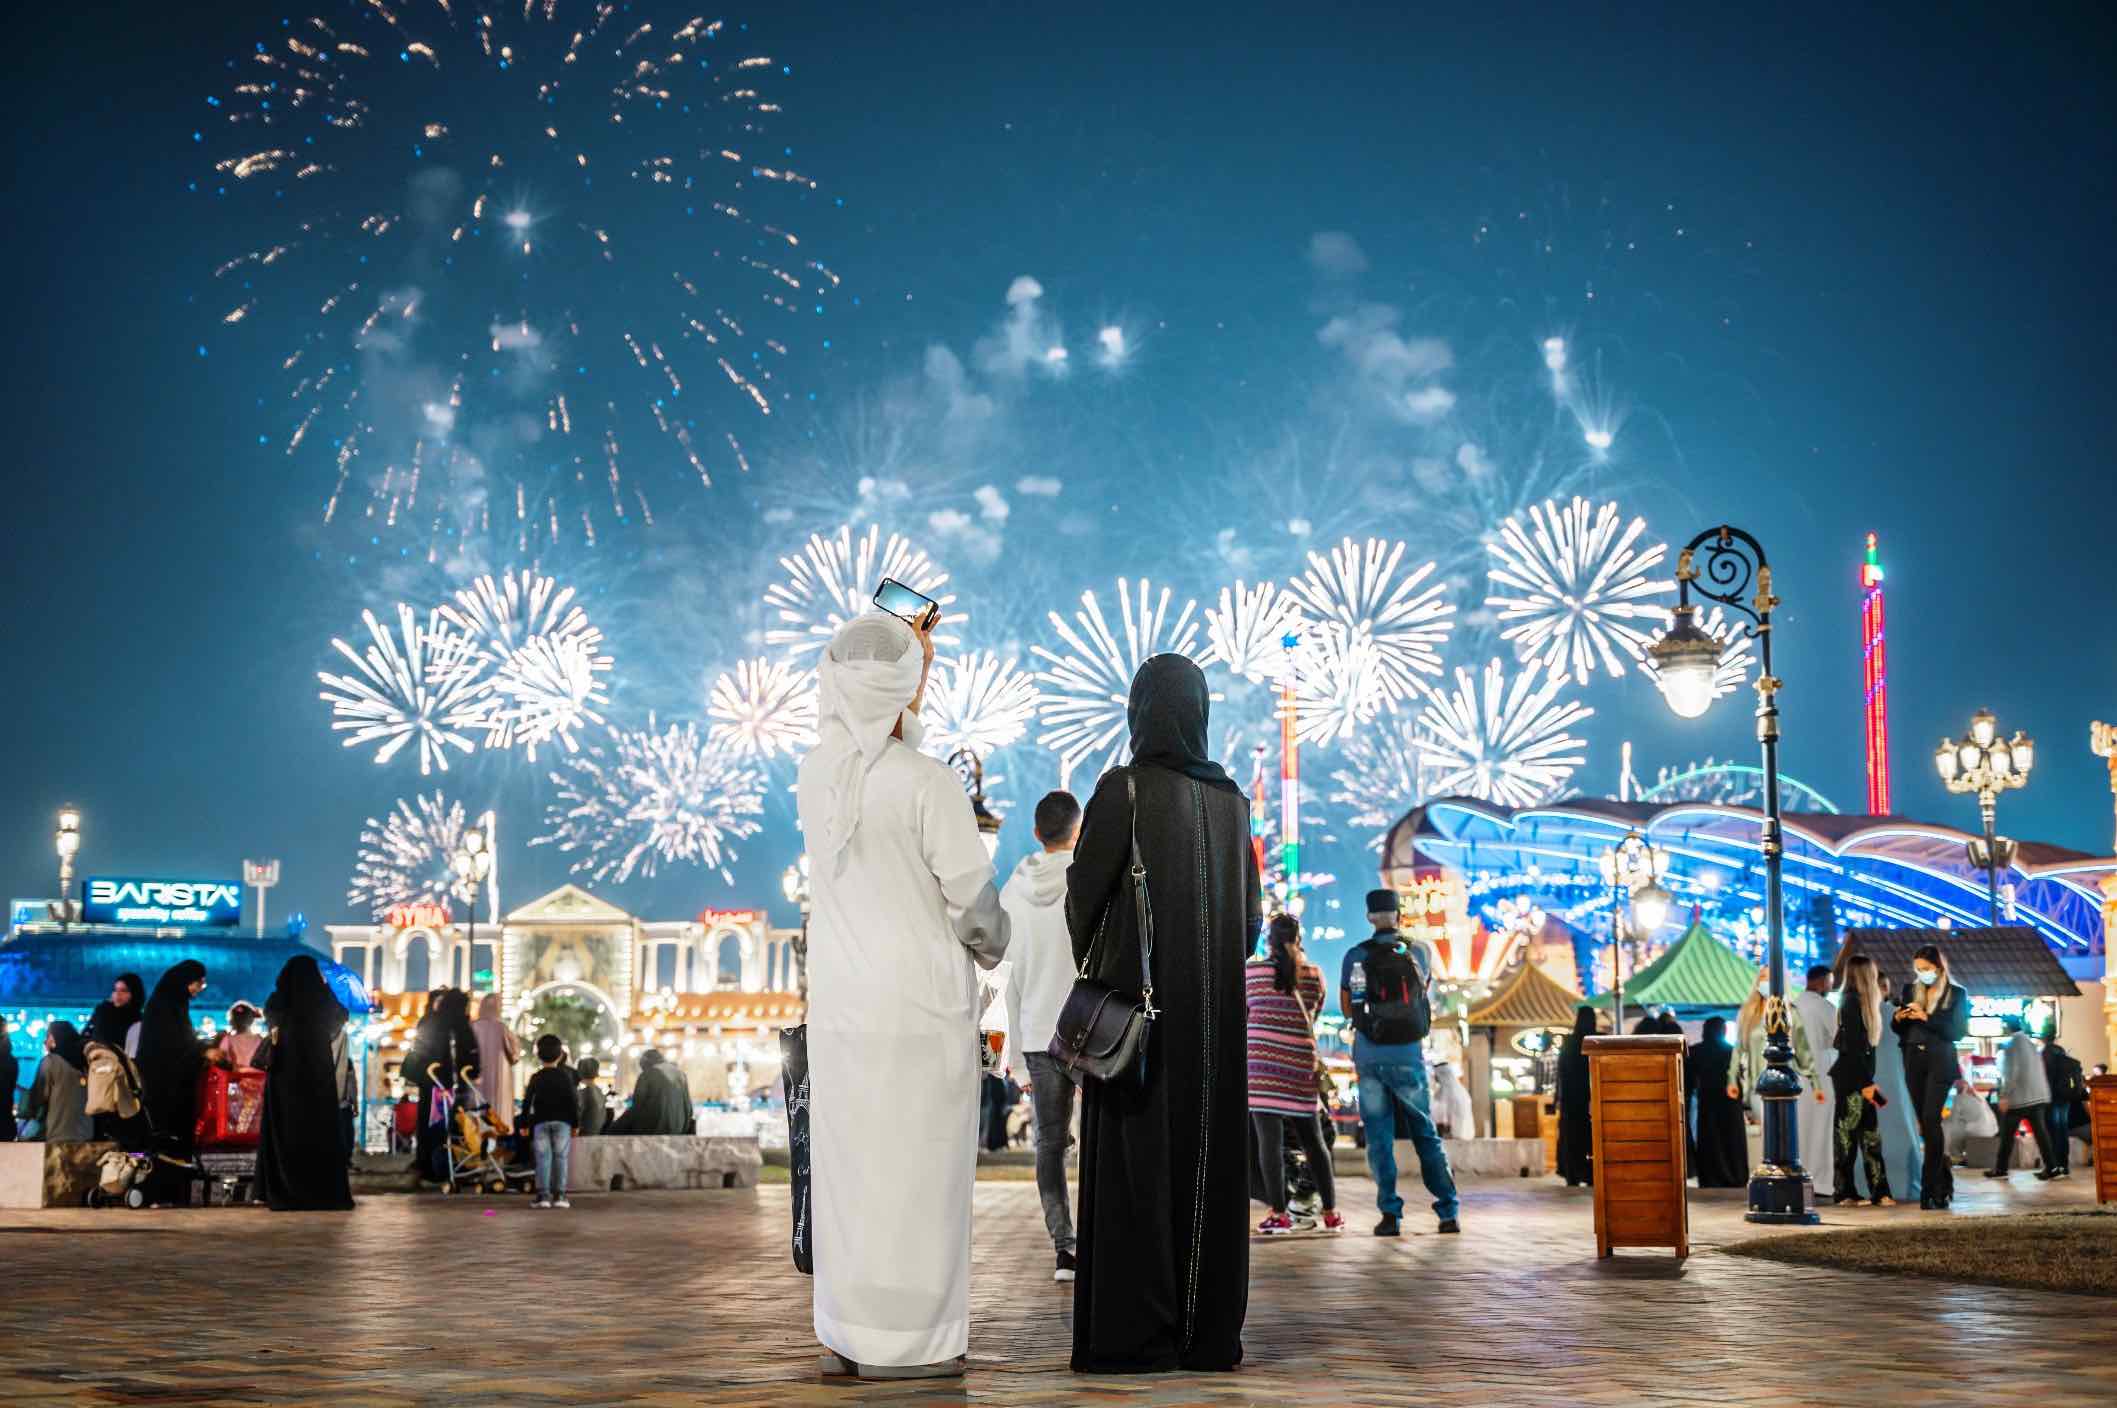 حفلات رأس السنة 2023 في السعودية